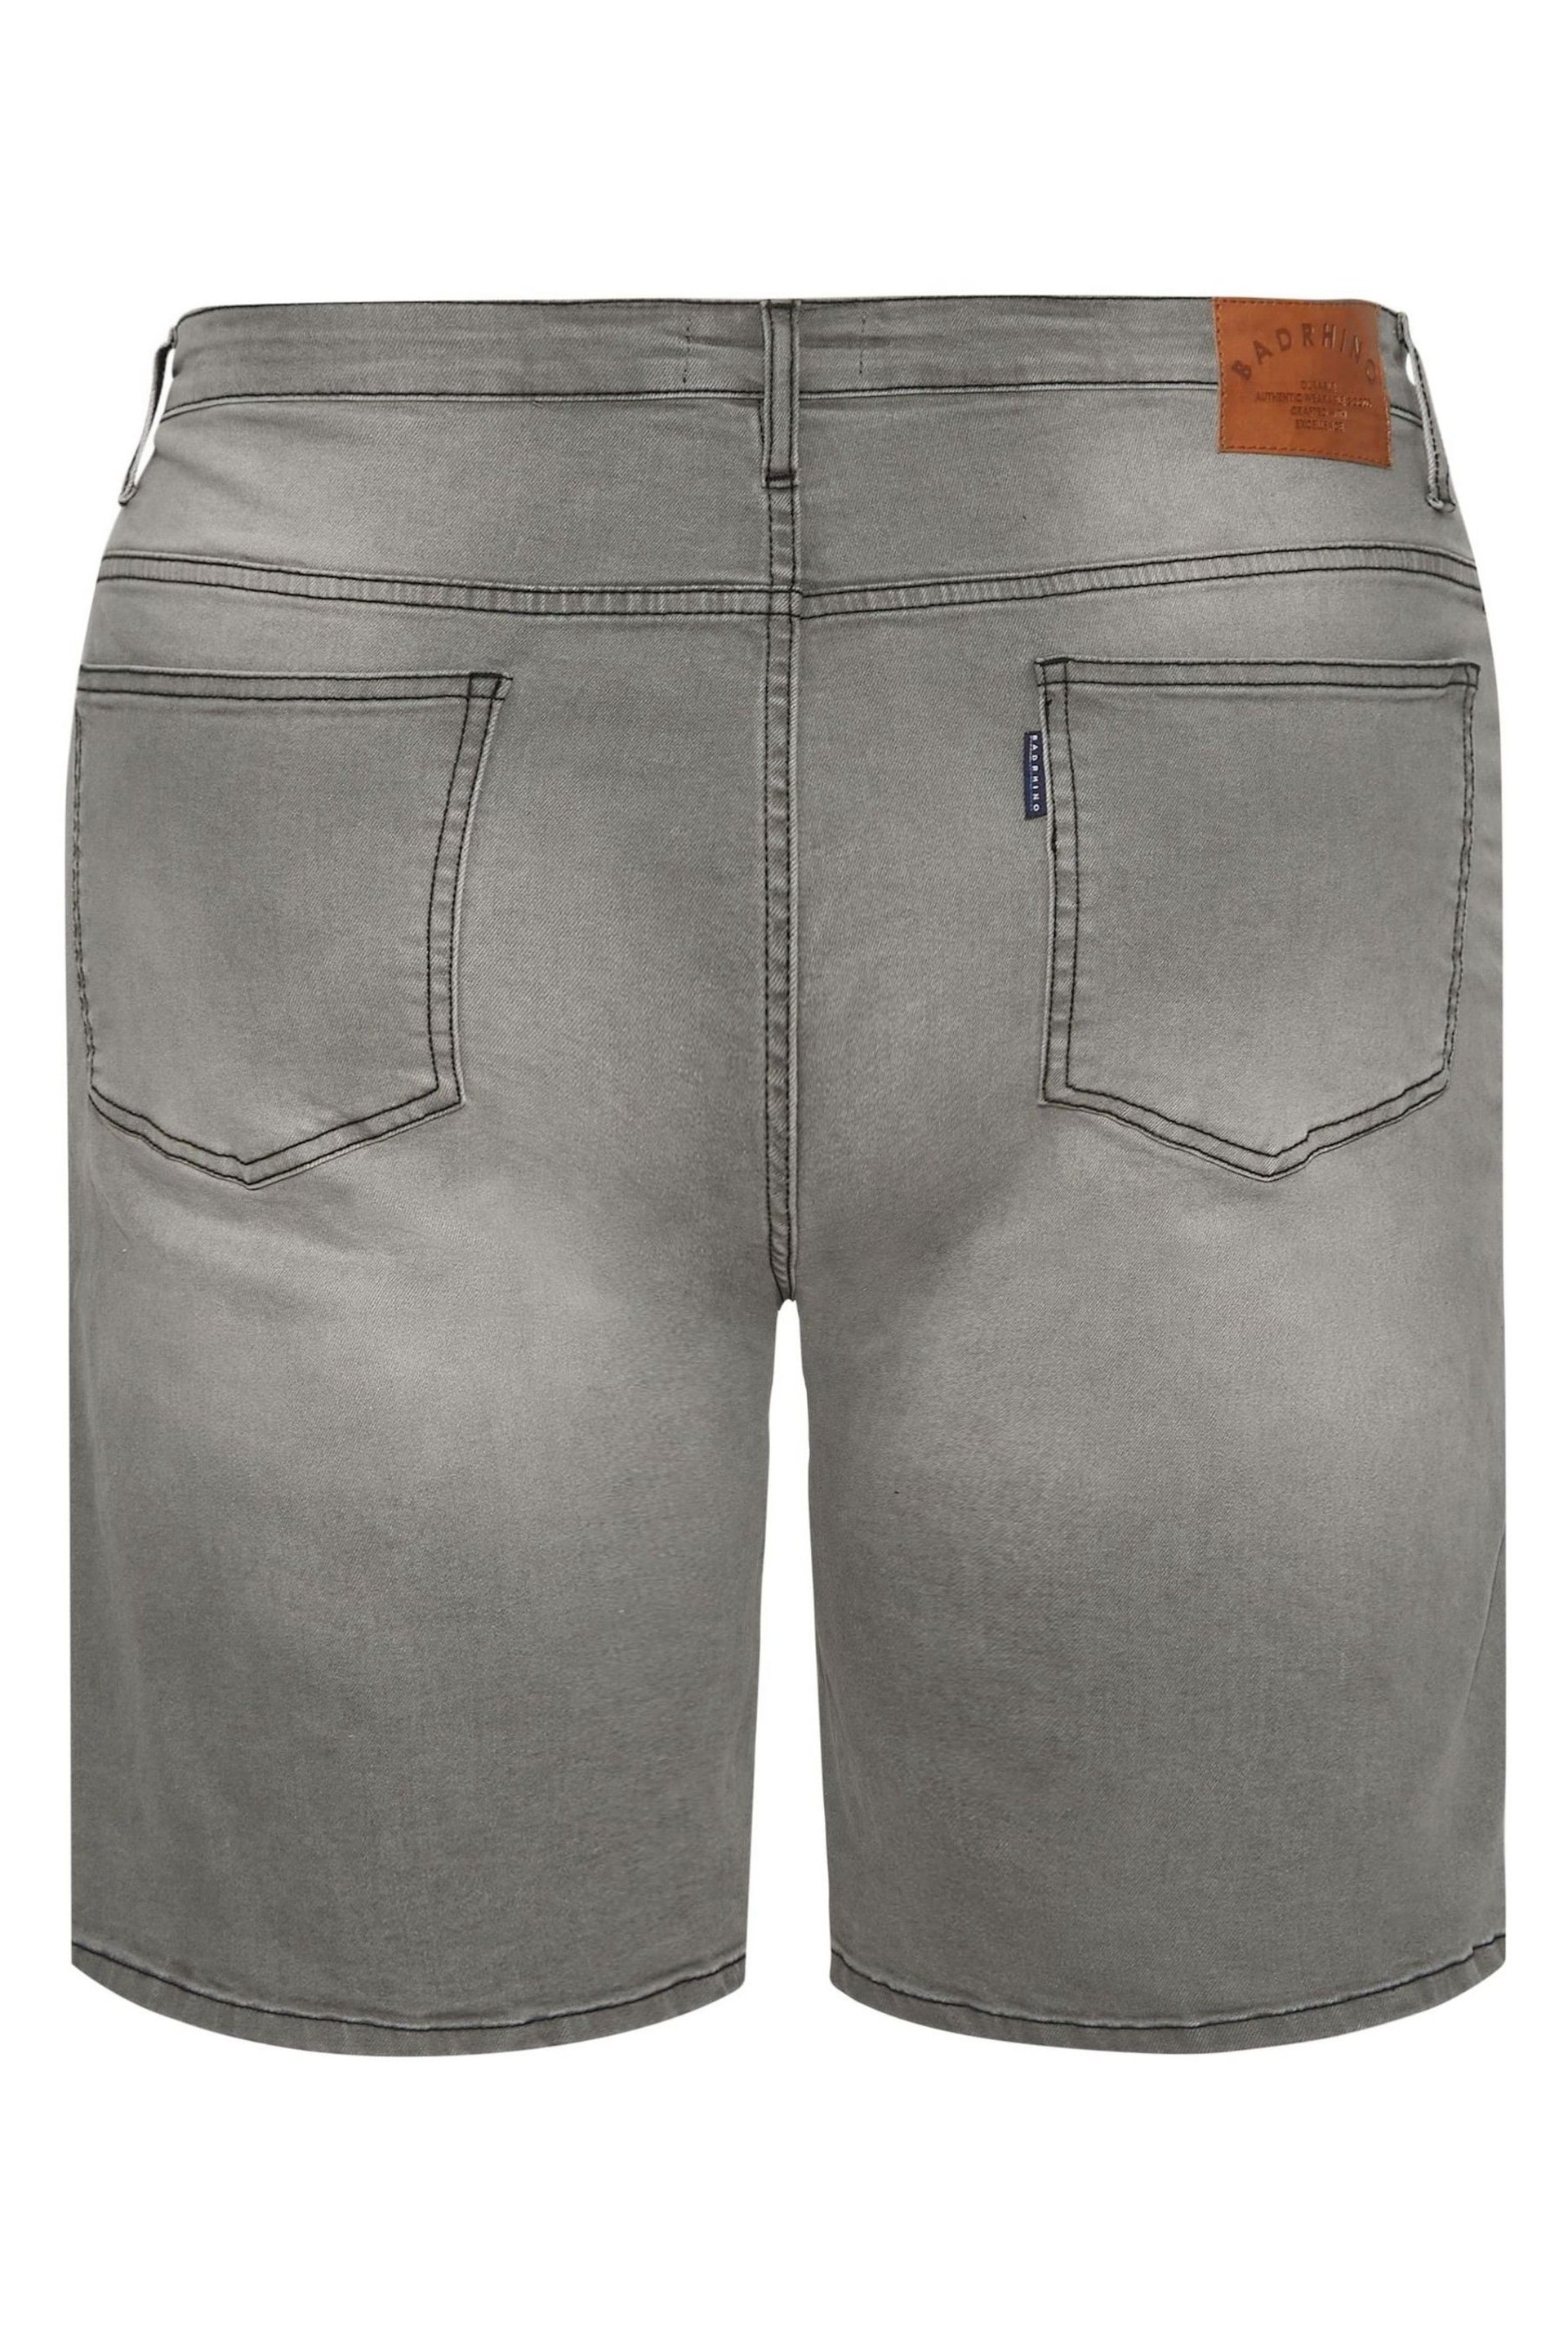 BadRhino Big & Tall Grey Denim Shorts - Image 4 of 4